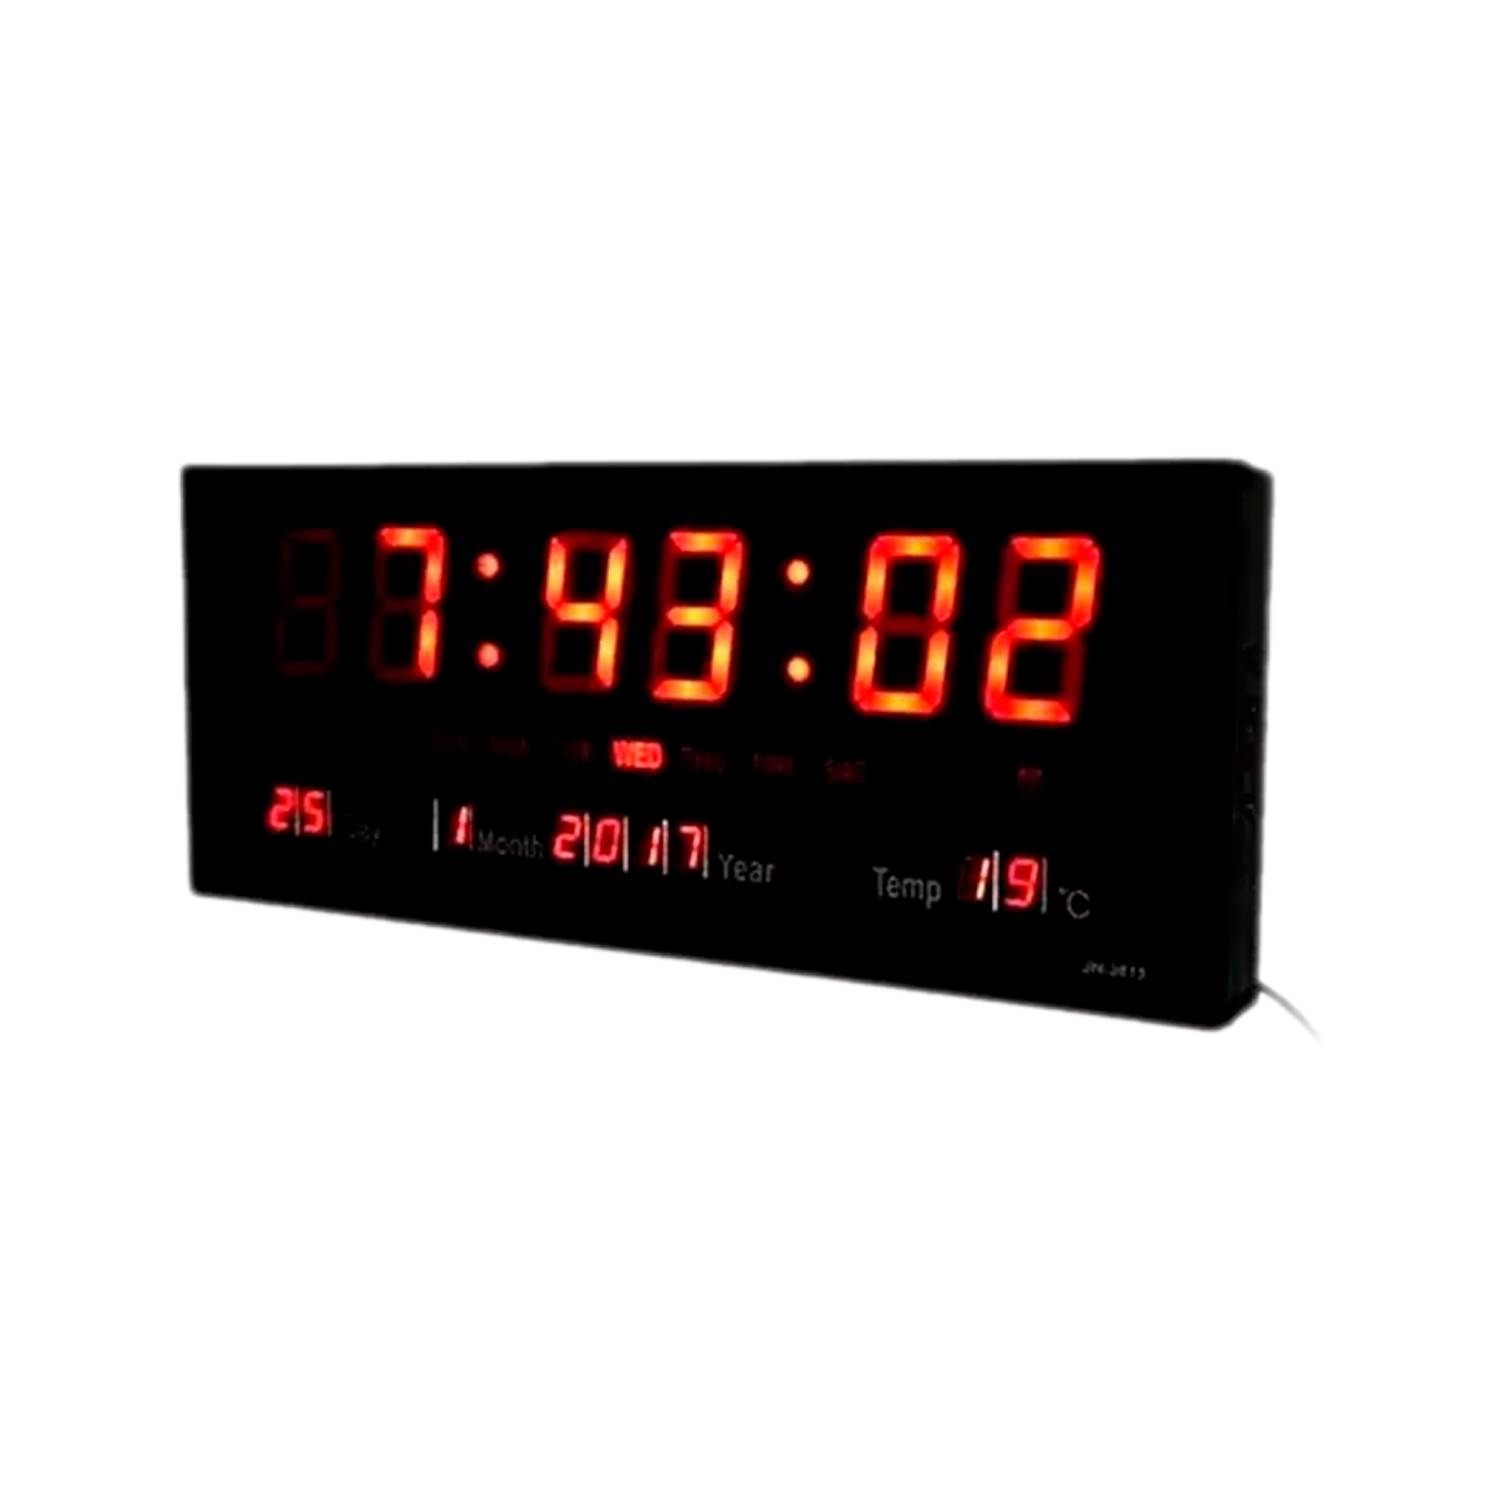 Reloj Pared Digital Kadio Termometro Timer Alarma Calendario